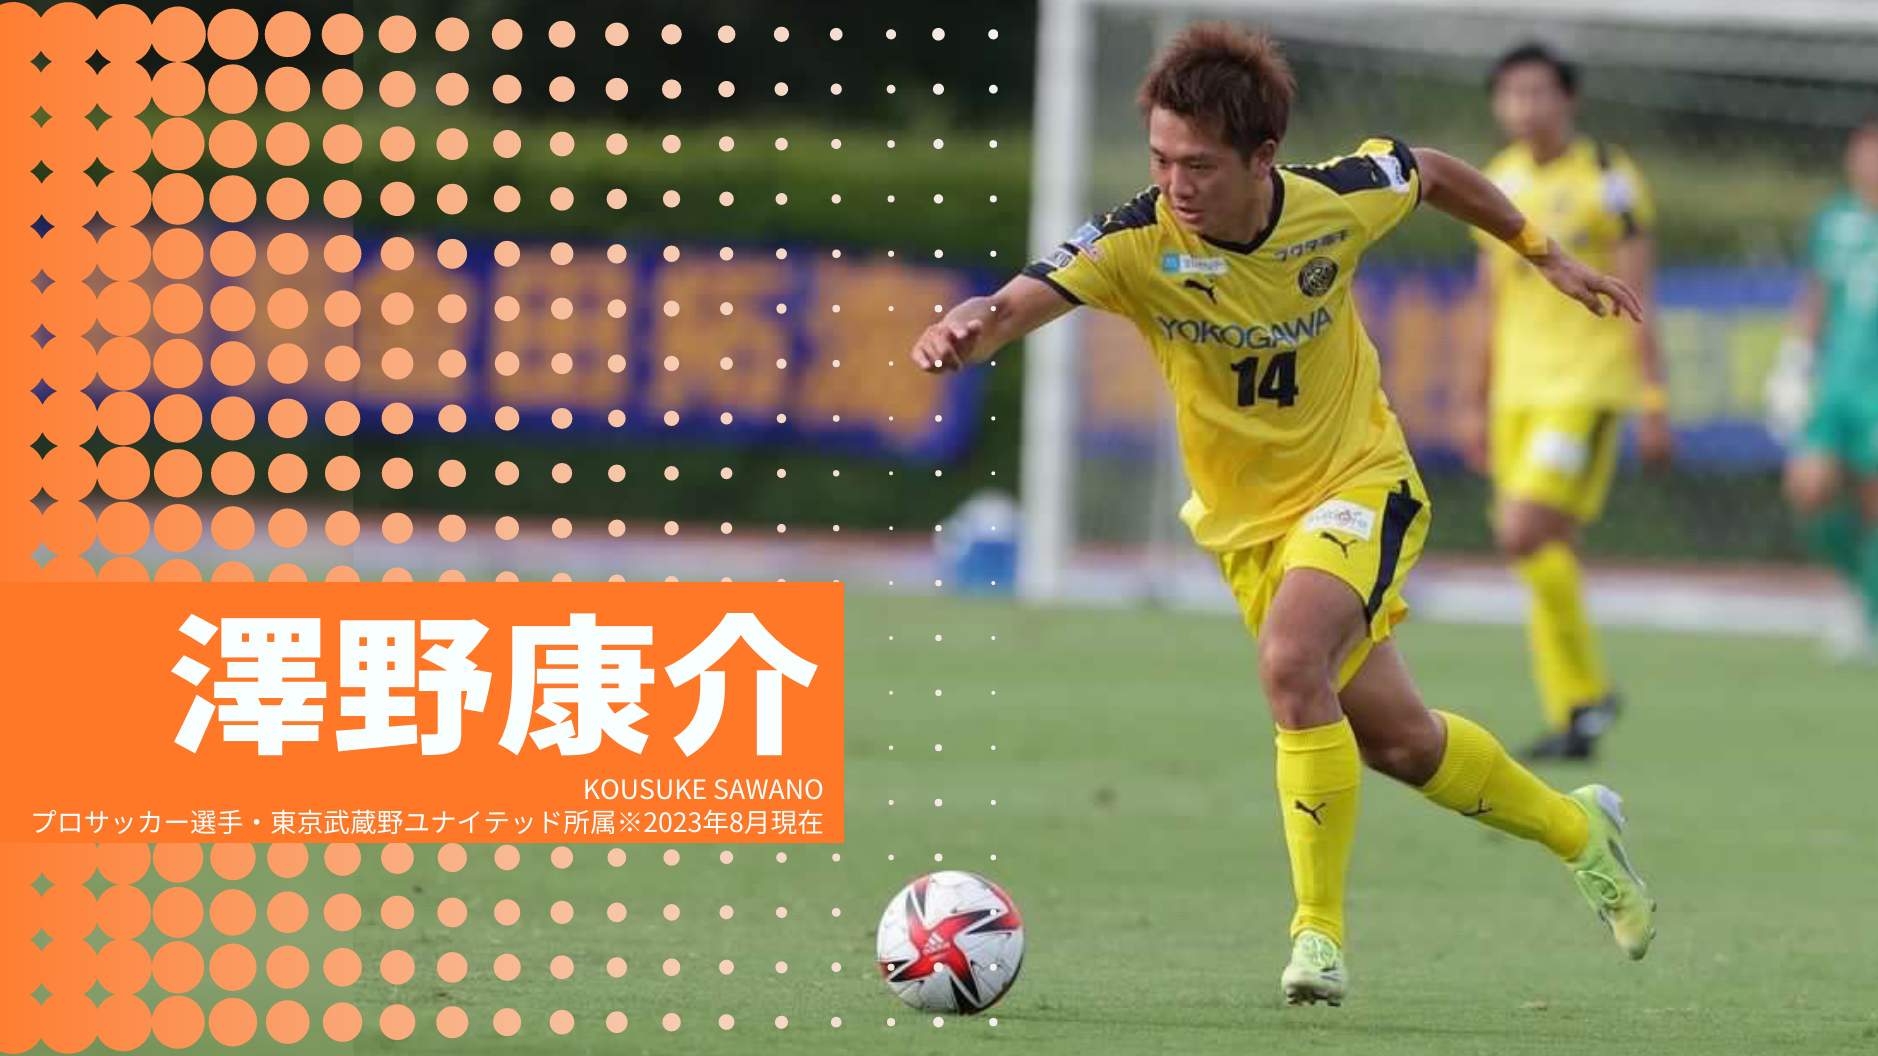 澤野康介
KOUSUKE SAWANO
プロサッカー選手・東京武蔵野ユナイテッド所属※2023年8月現在